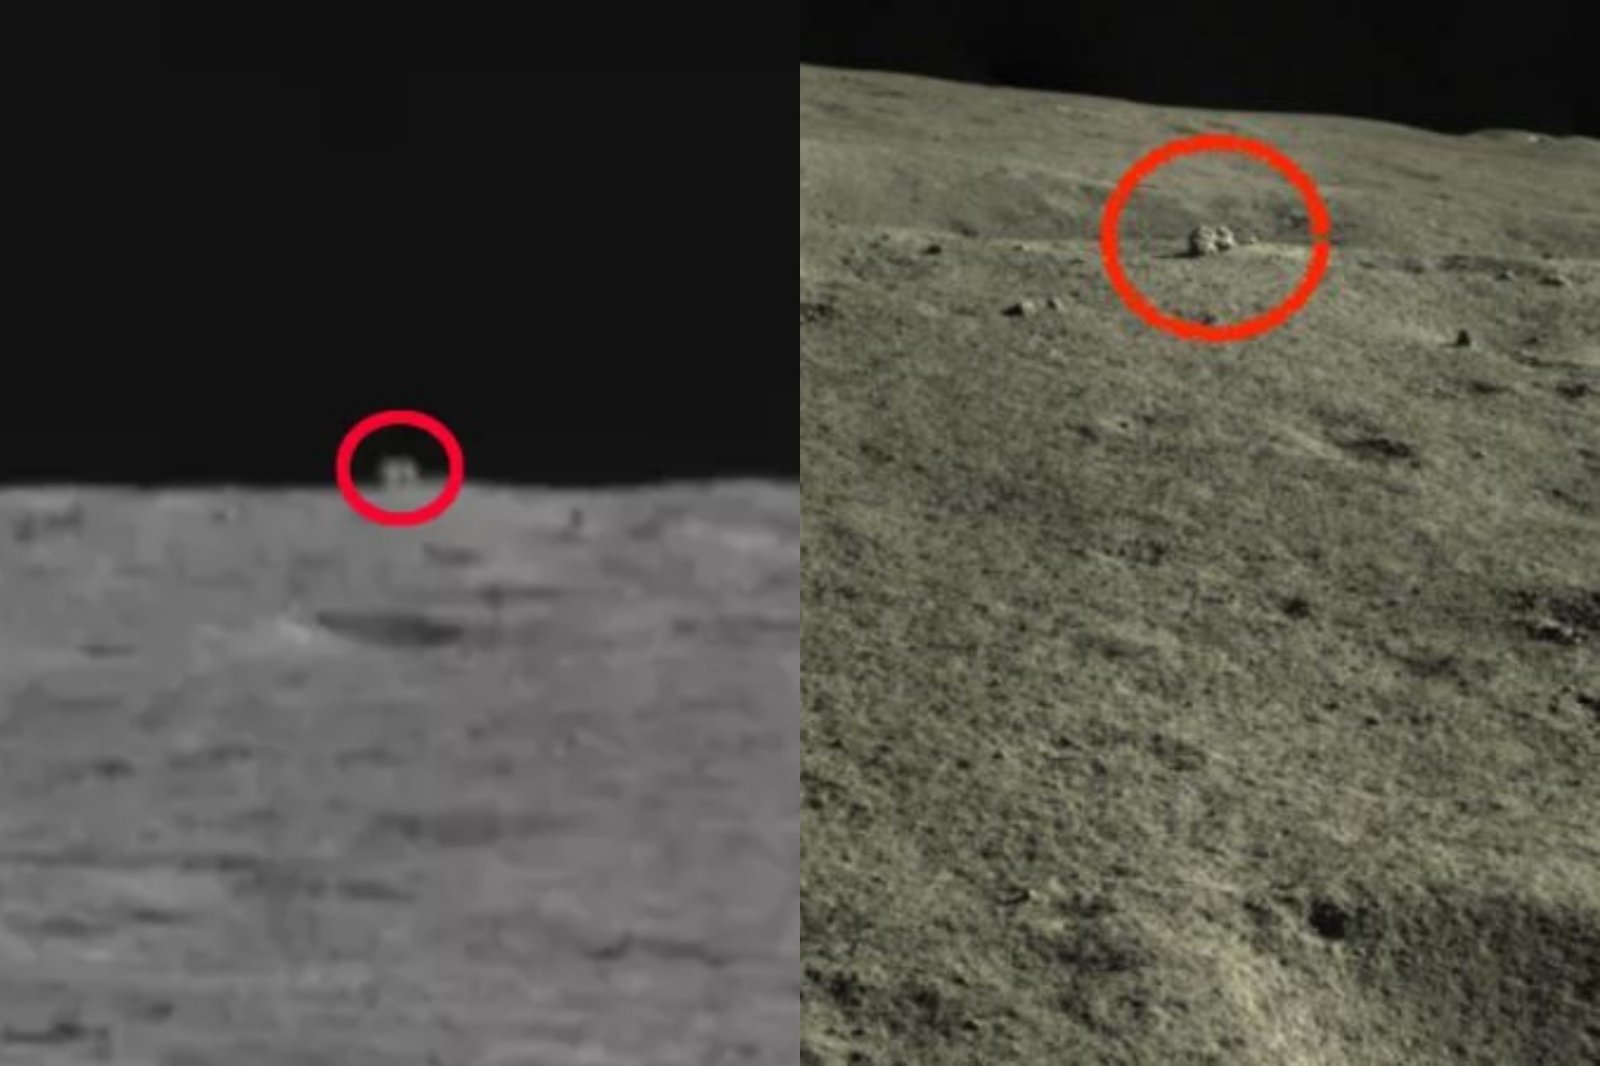 På den usynlige siden av månen blir et kubeformet objekt oppdaget av måneskinn udødeliggjort: vi vet nå hva det er